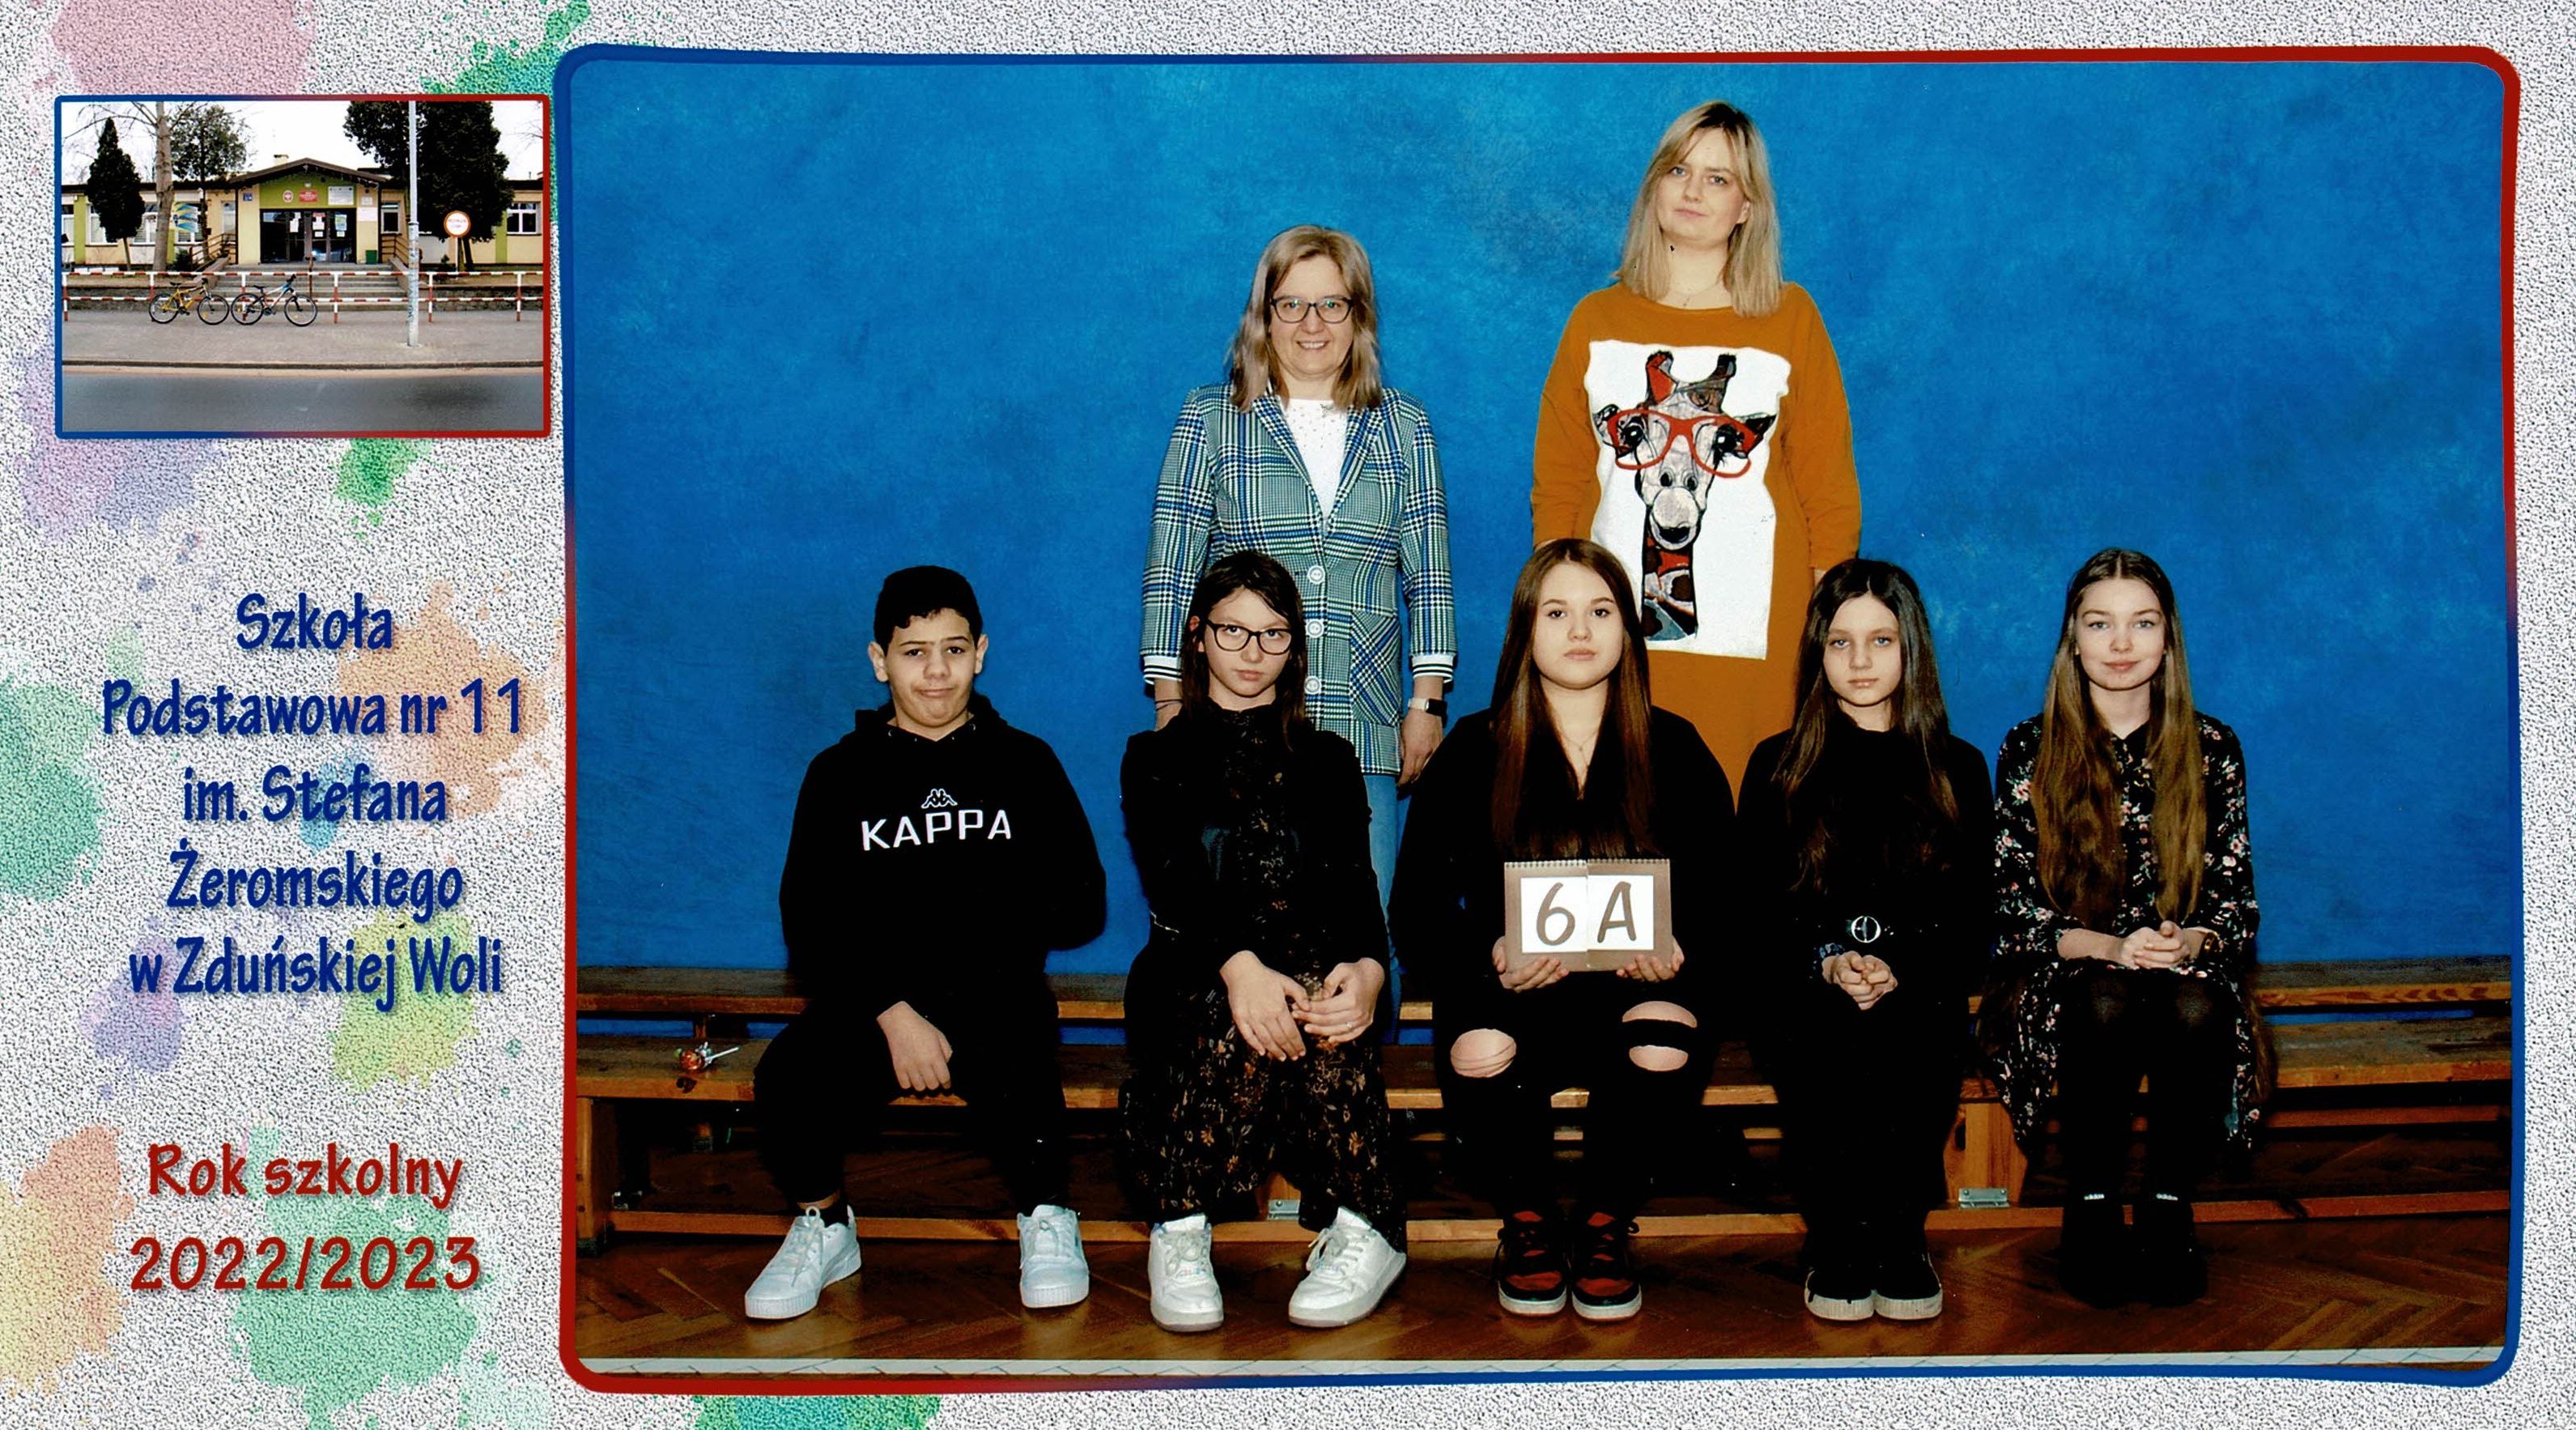 Uczniowie klasy 6A, dziewczynki i chłopcy siedzący na ławce z tabliczką "klasa 6a"